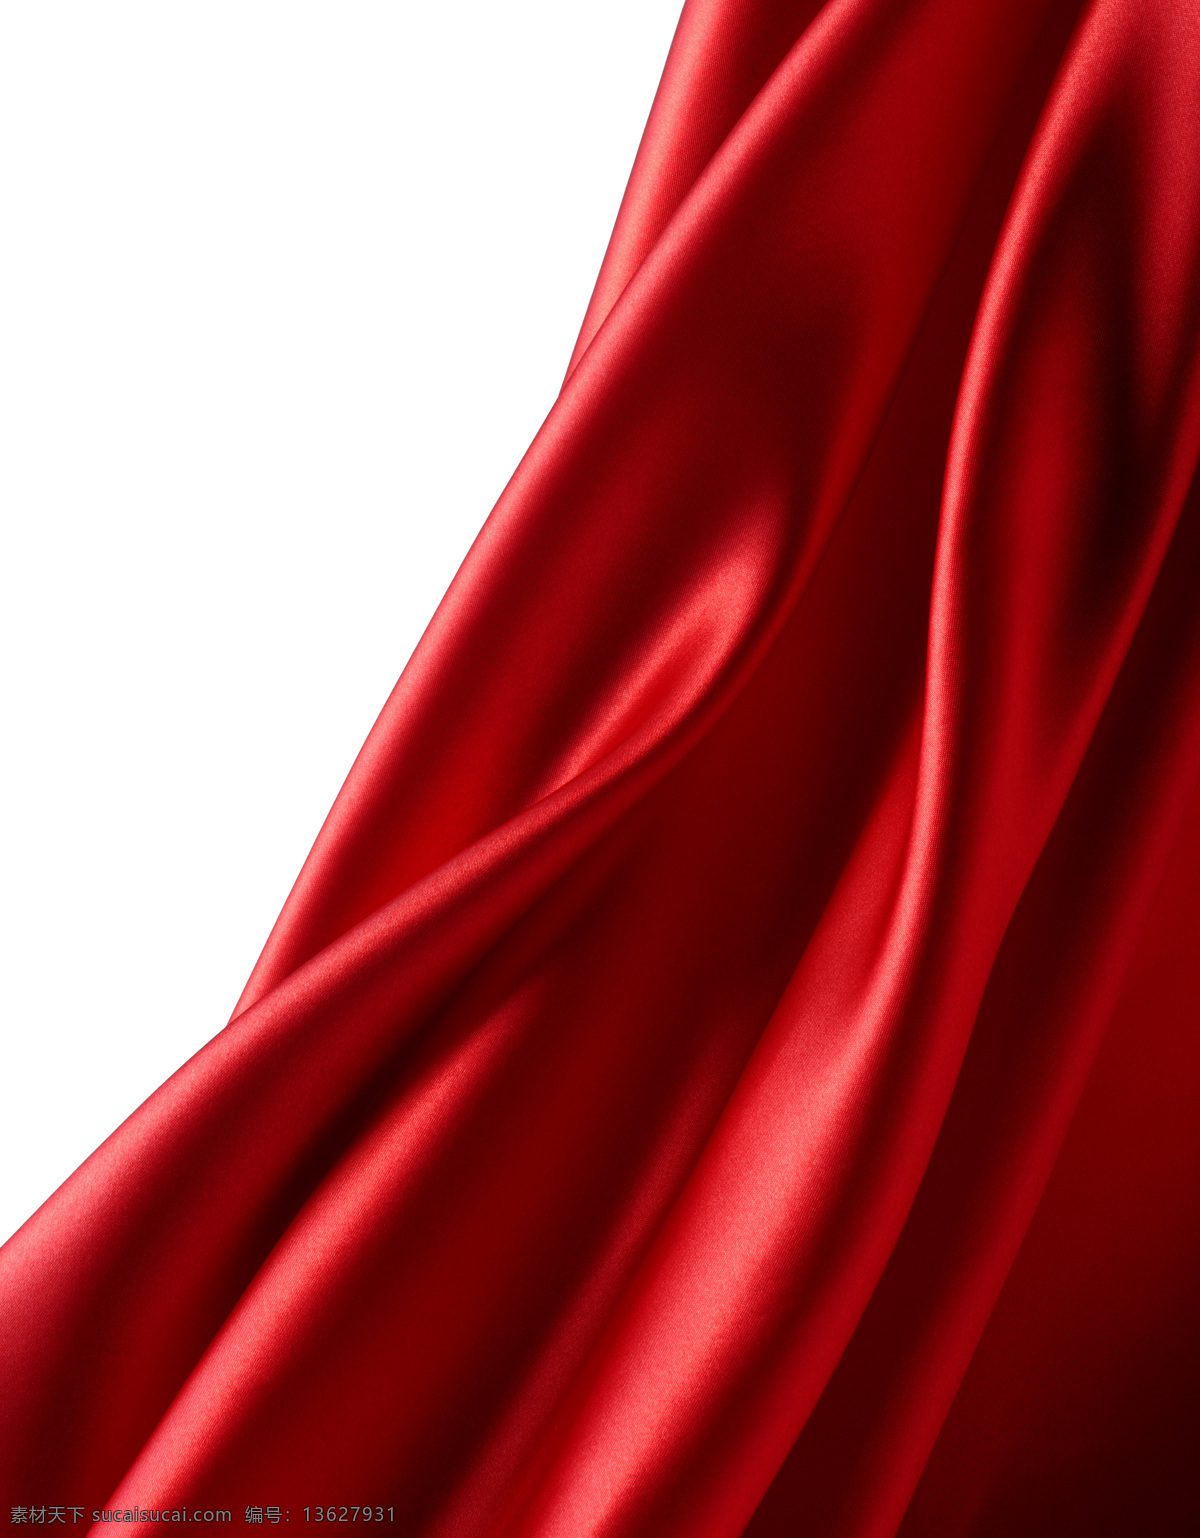 丝绸 背景 飘带 红绸 丝绸飘带 绸子 红布 红绸背景 布纹背景 珠宝服饰 生活百科